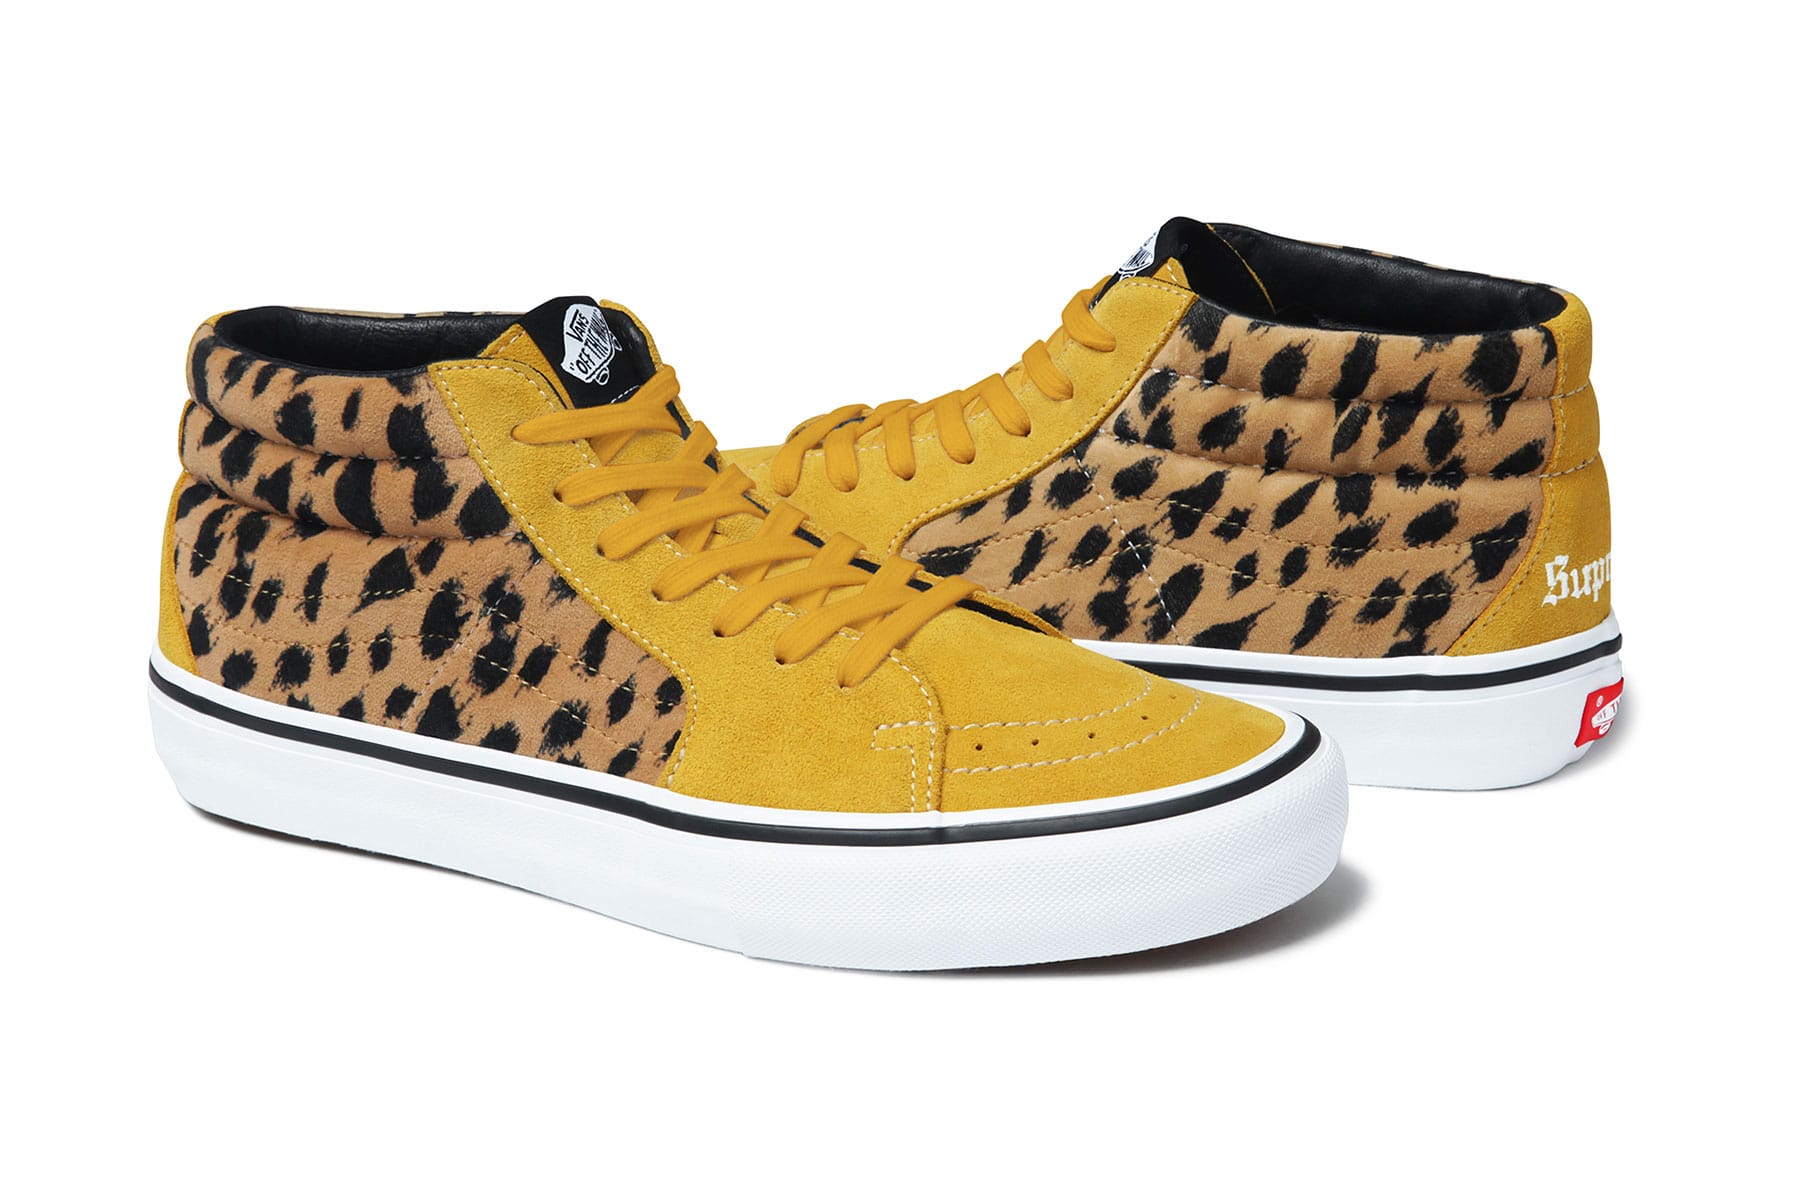 supreme x vans leopard collection